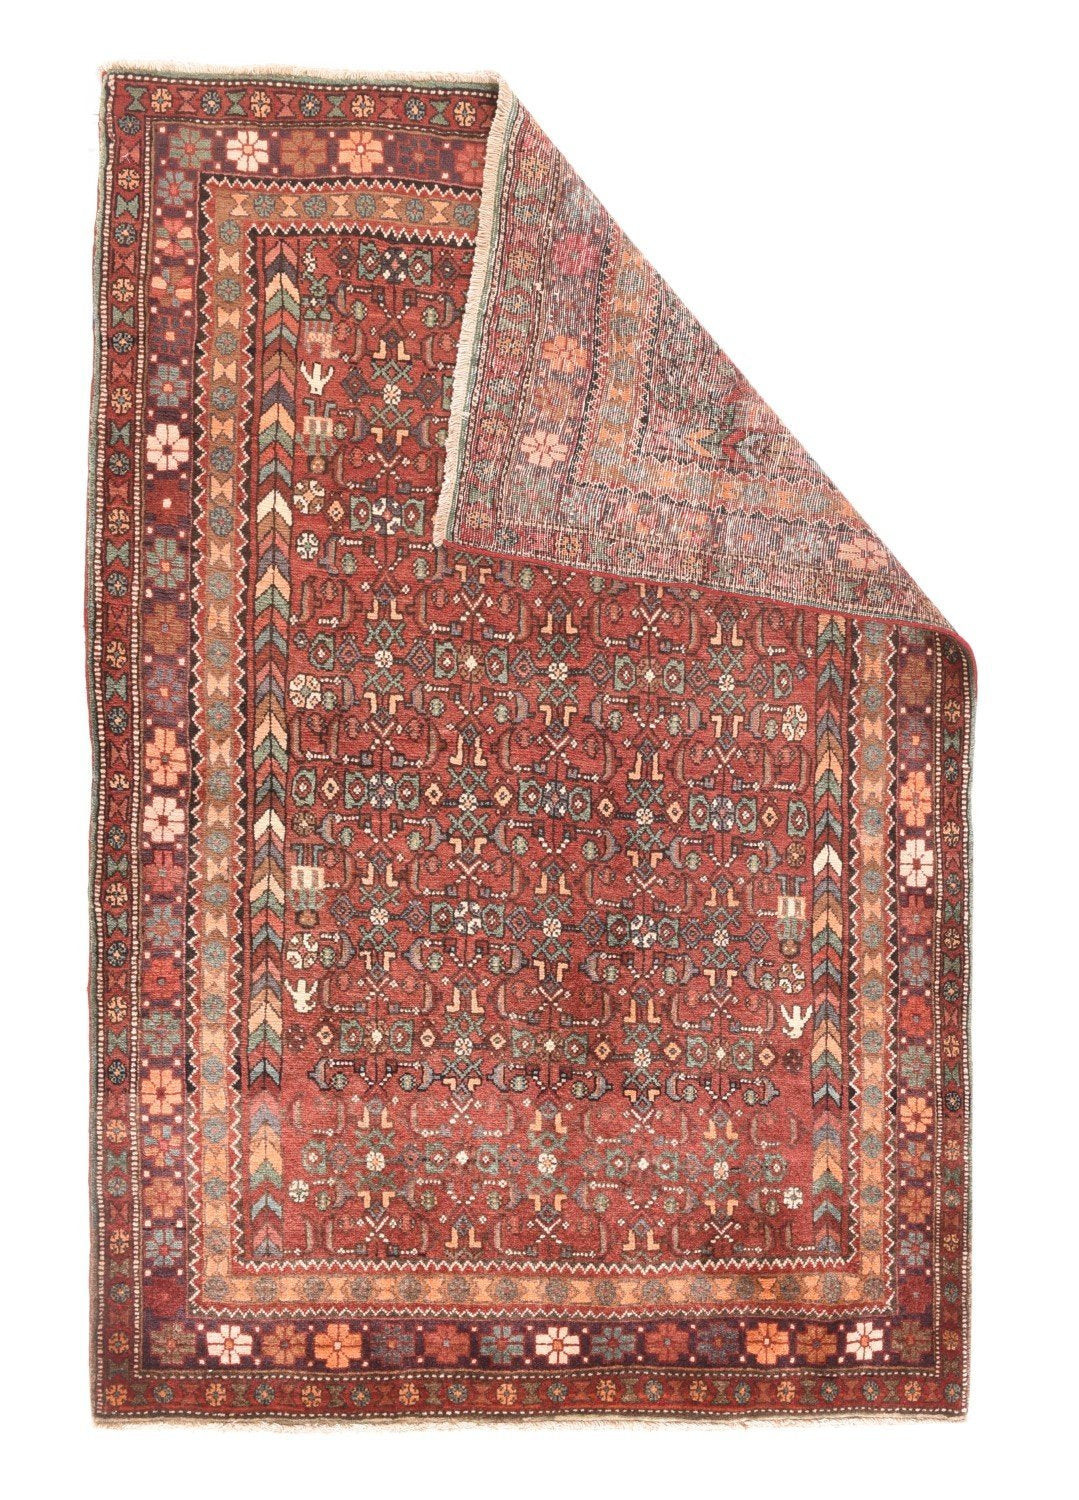 Fine Semi-Antique Persian Gholtogh, Size 4'1" X 6'4"